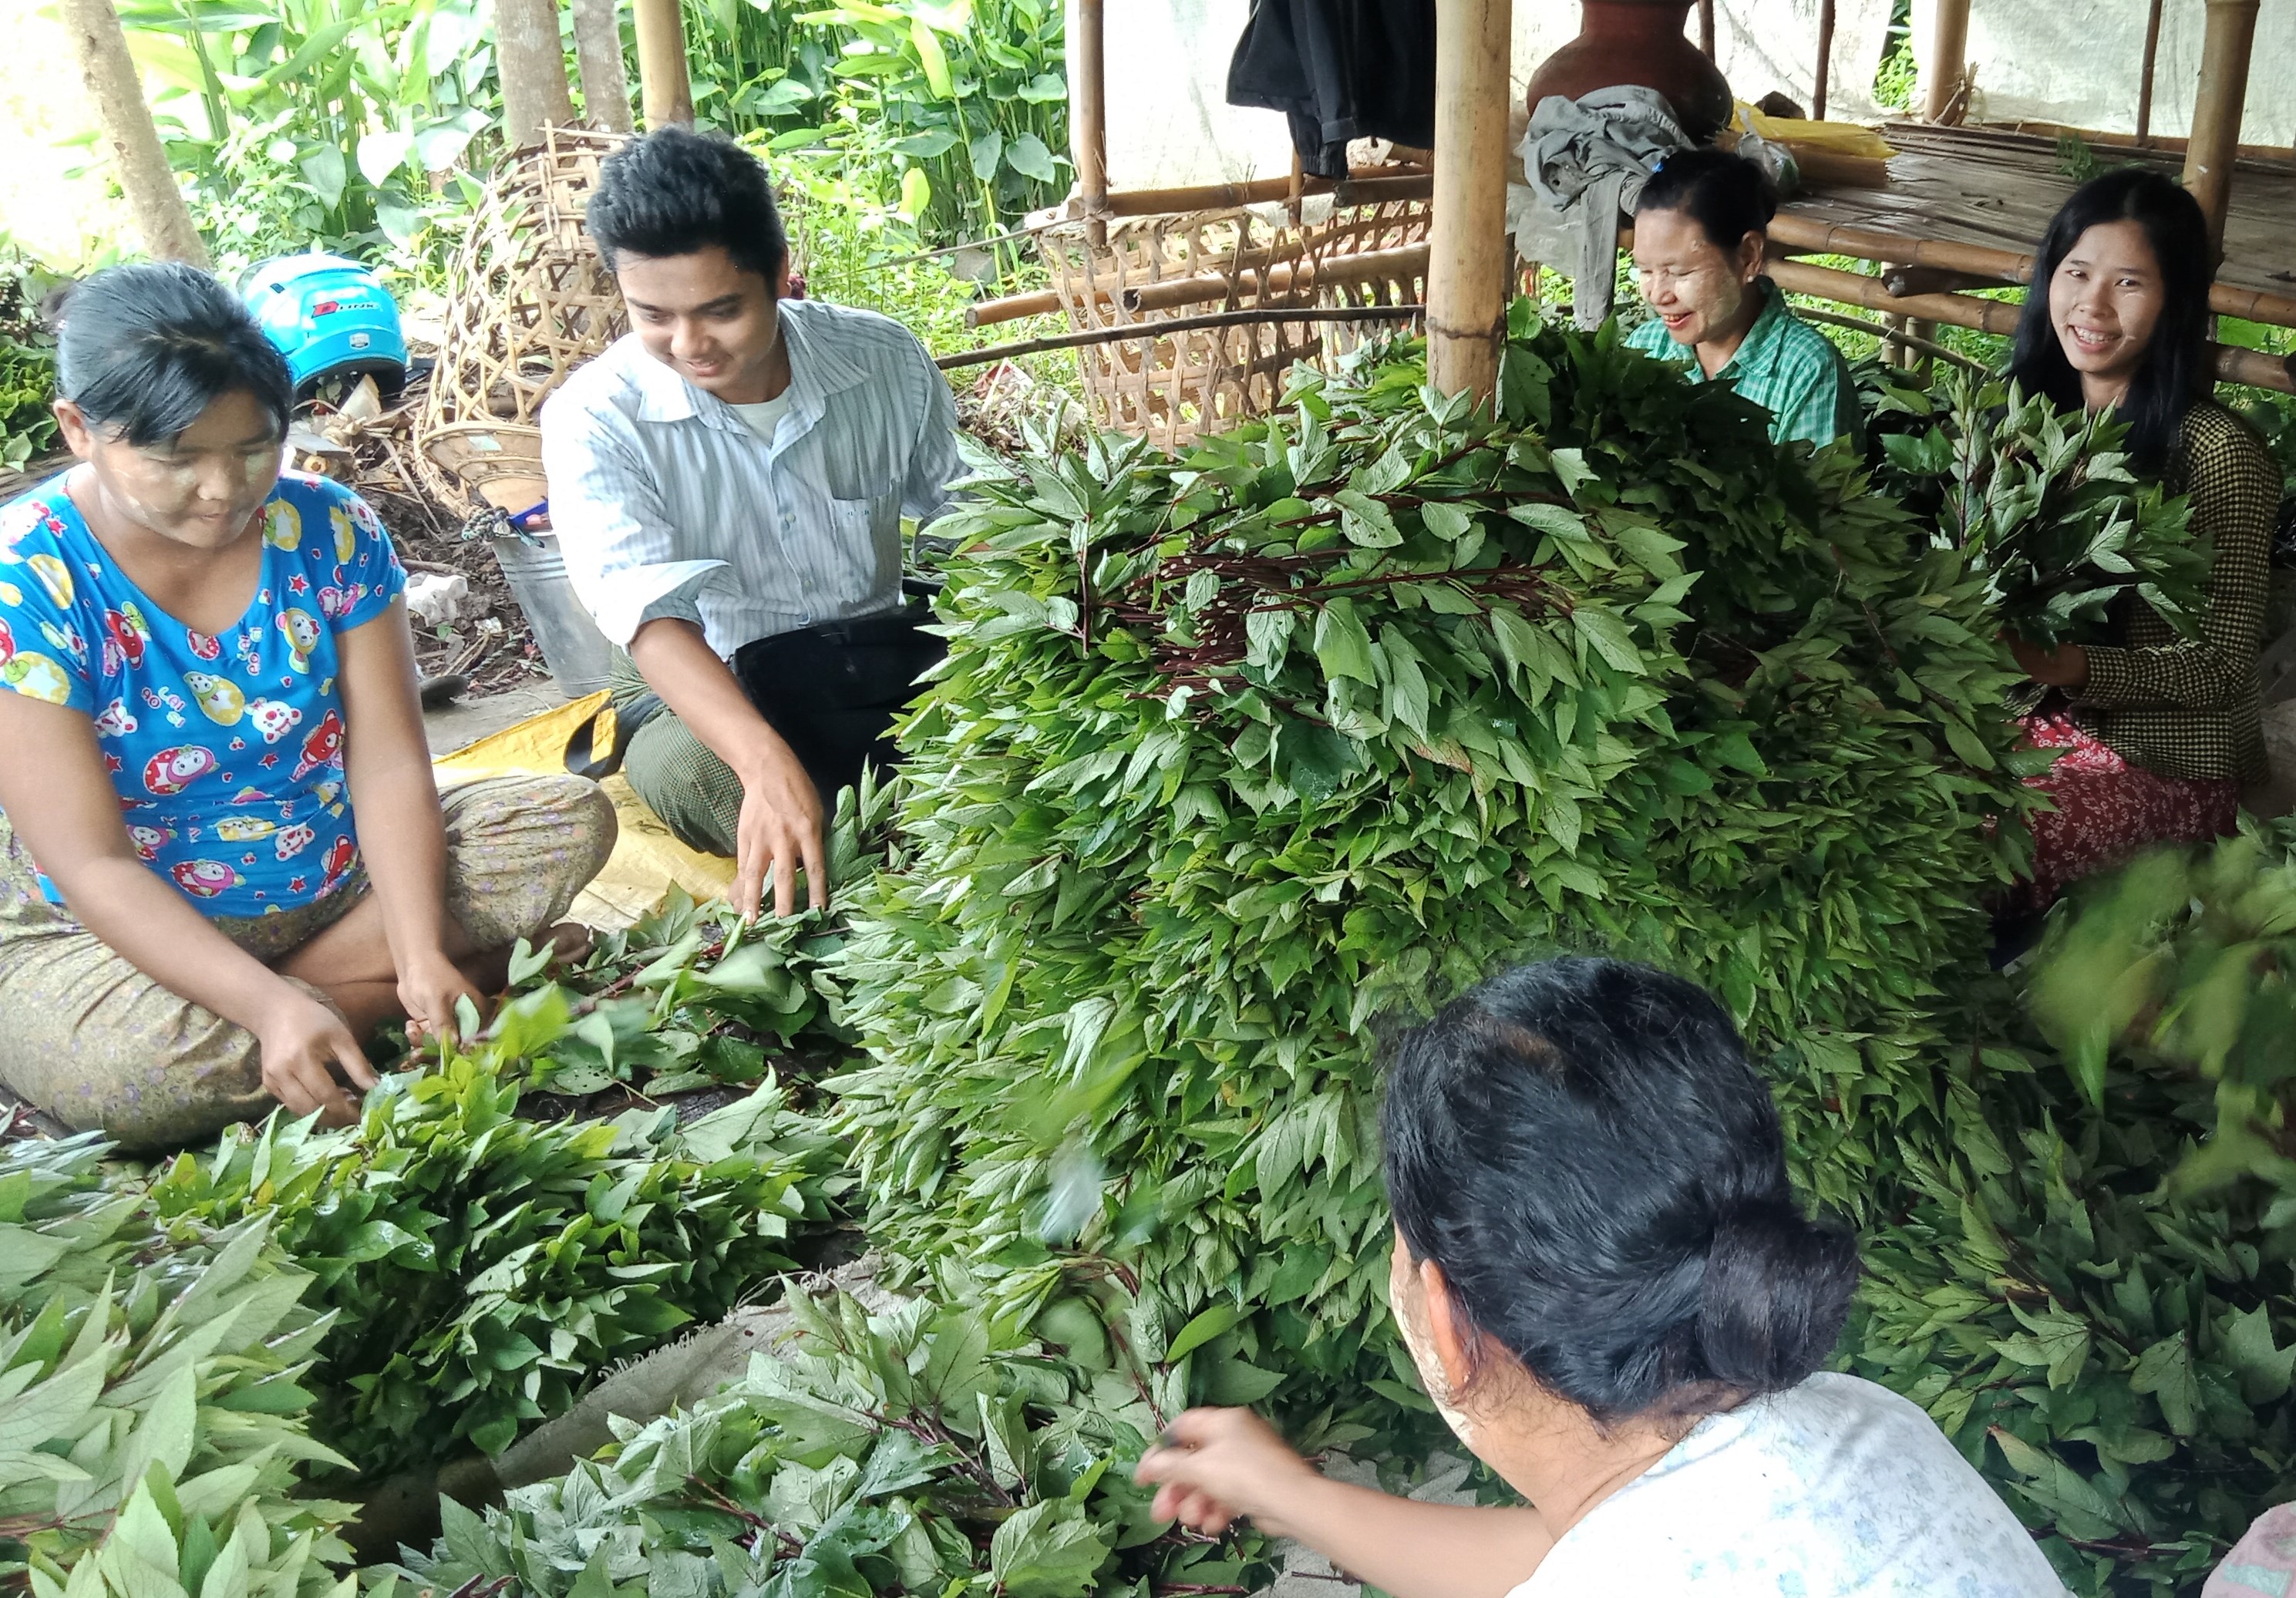 Team Makes Field Trip in Myanmar interacting